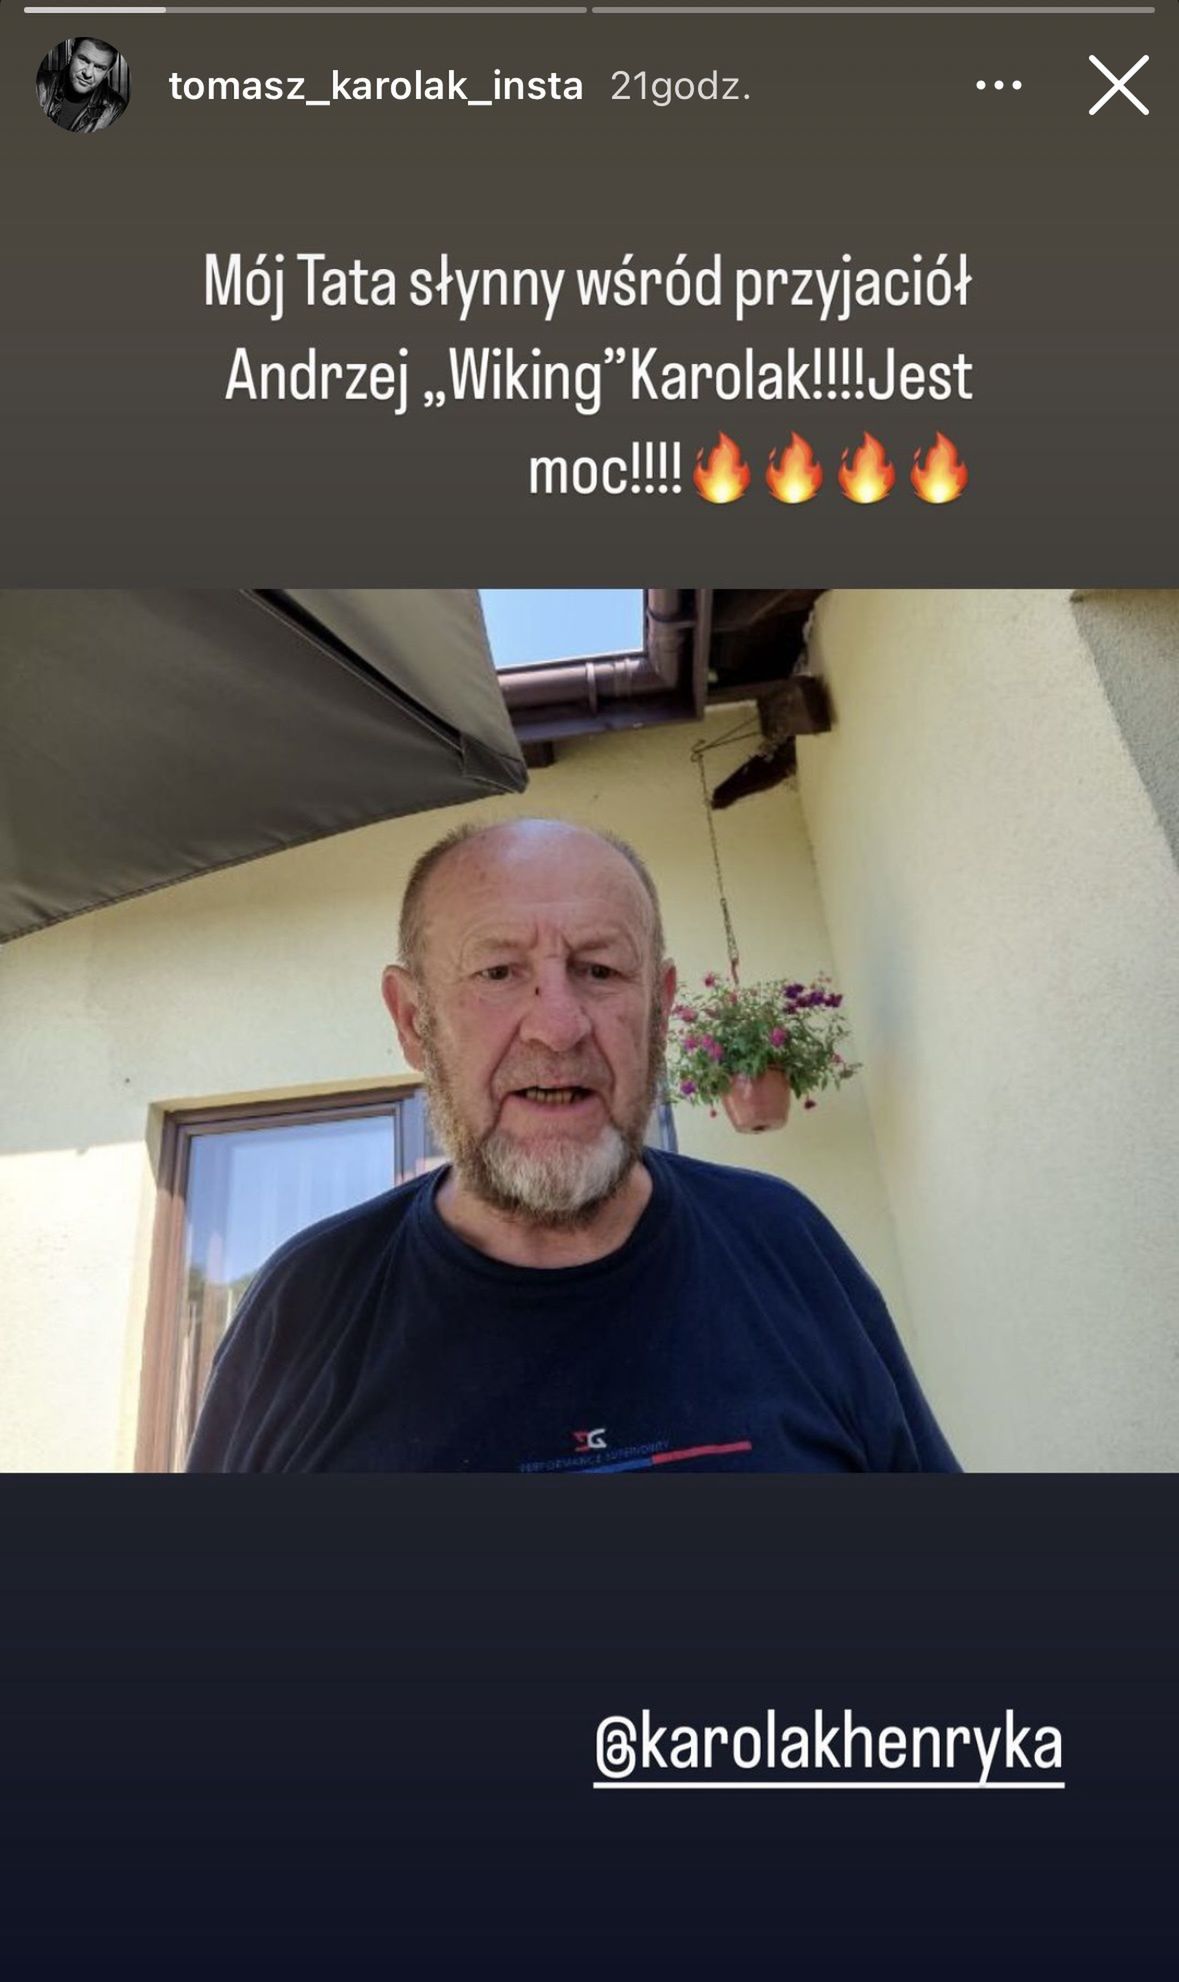 Tomasz Karolak pokazał ojca, Instagram.com/tomasz_karolak_insta